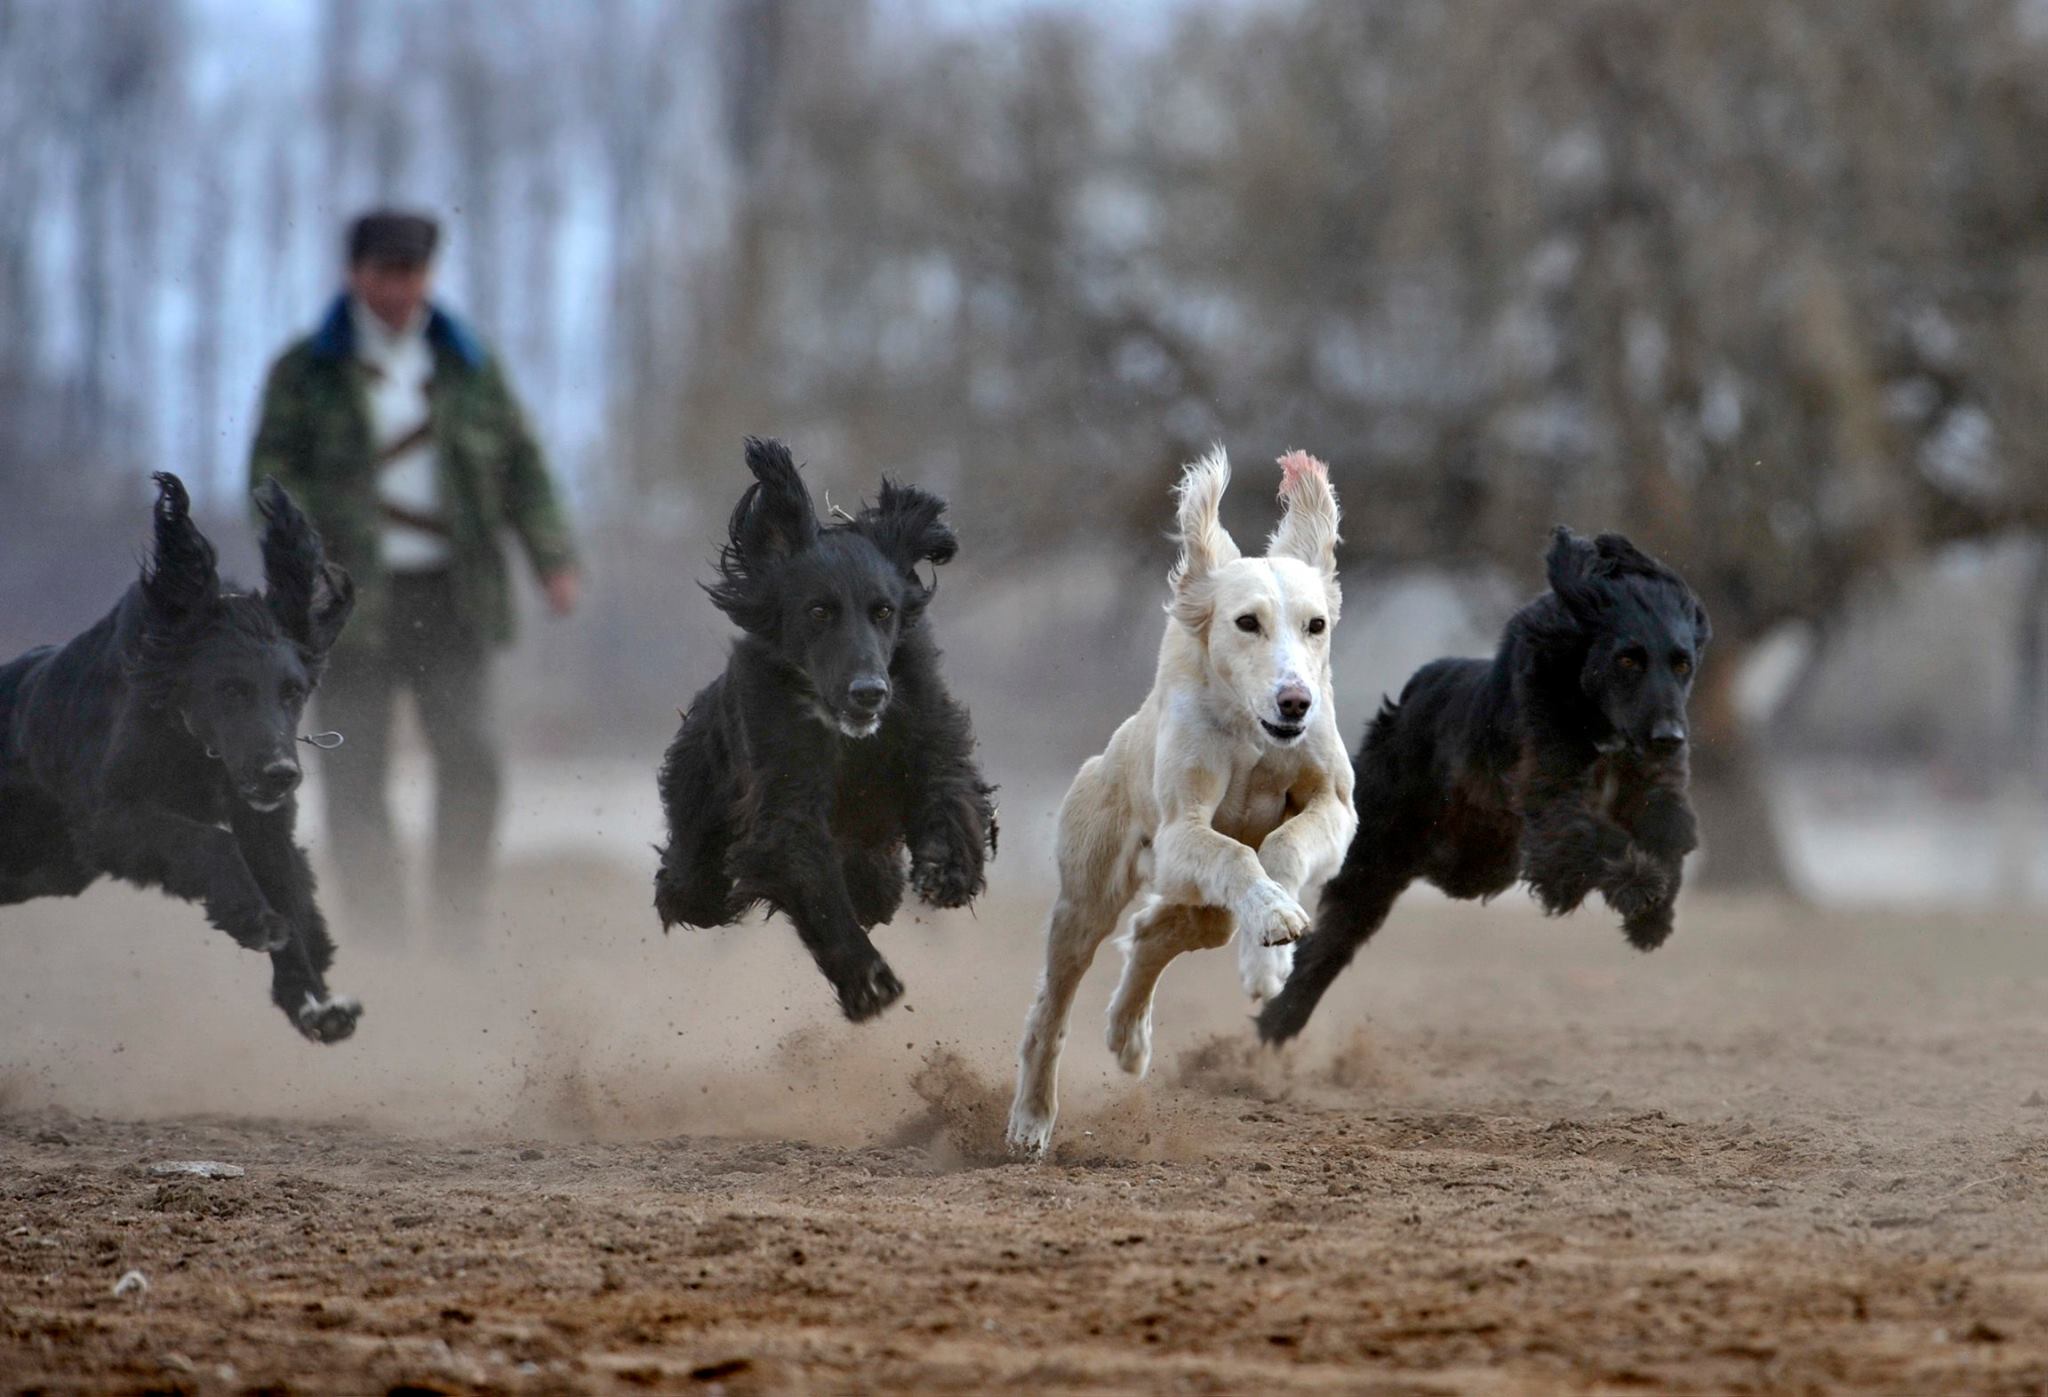 Кыргызский Тайган это уникальная собака древнего происхождения, которая всегда была помощником и другом в быту кыргызского народа.